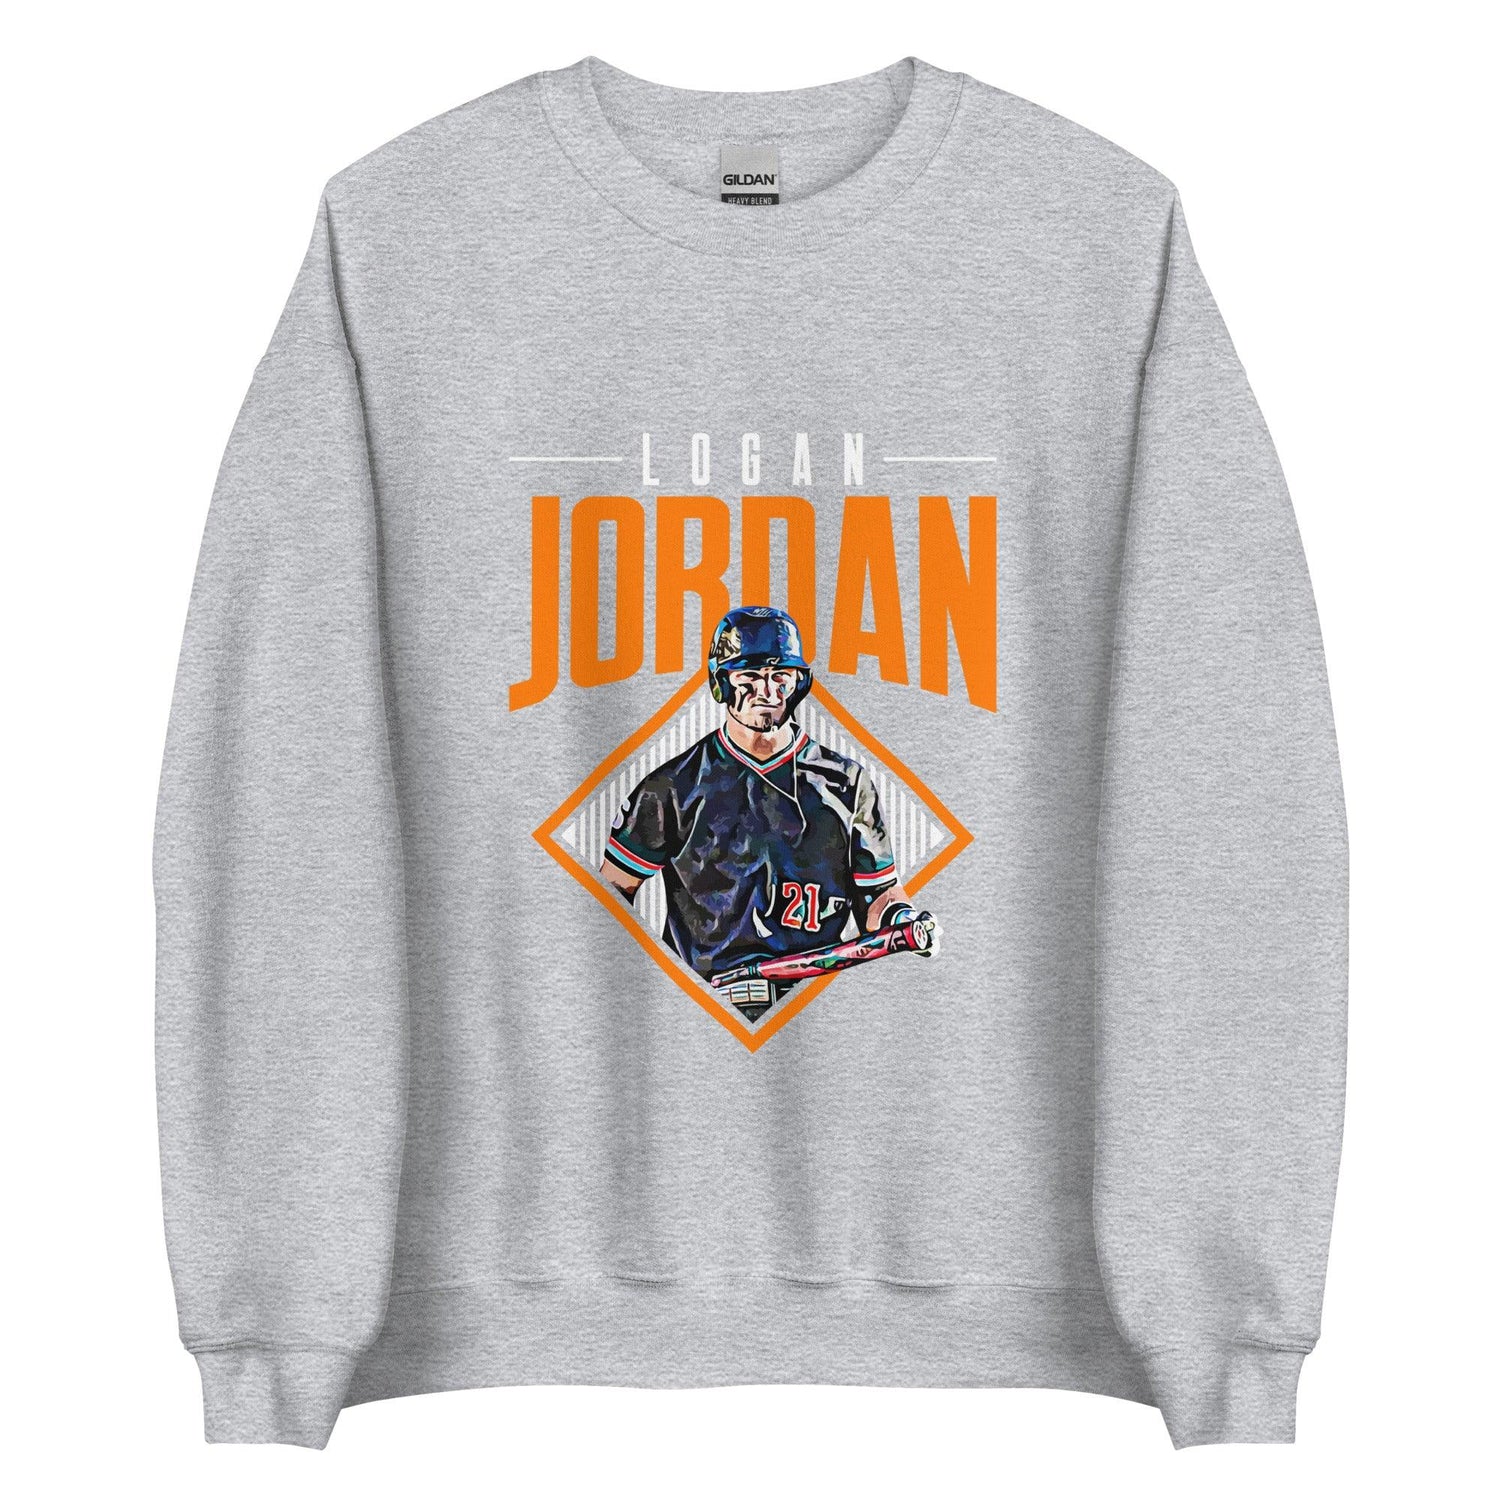 Logan Jordan "Grand Slam" Sweatshirt - Fan Arch